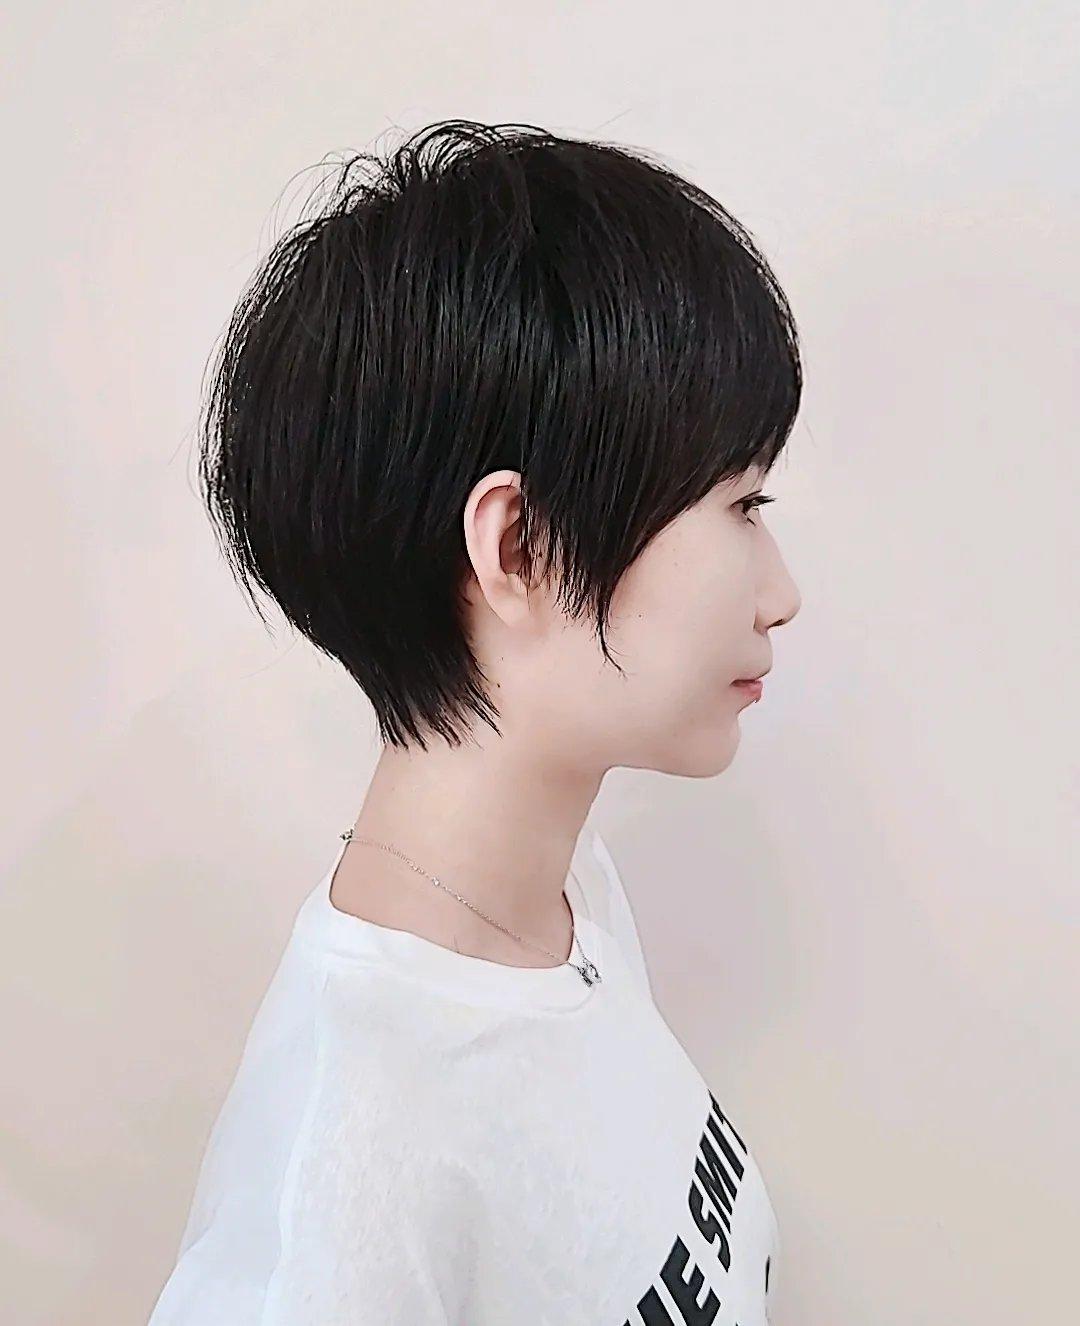 露耳短碎发是日常生活中比较常见的发型,有全露耳和半露耳两种,时尚